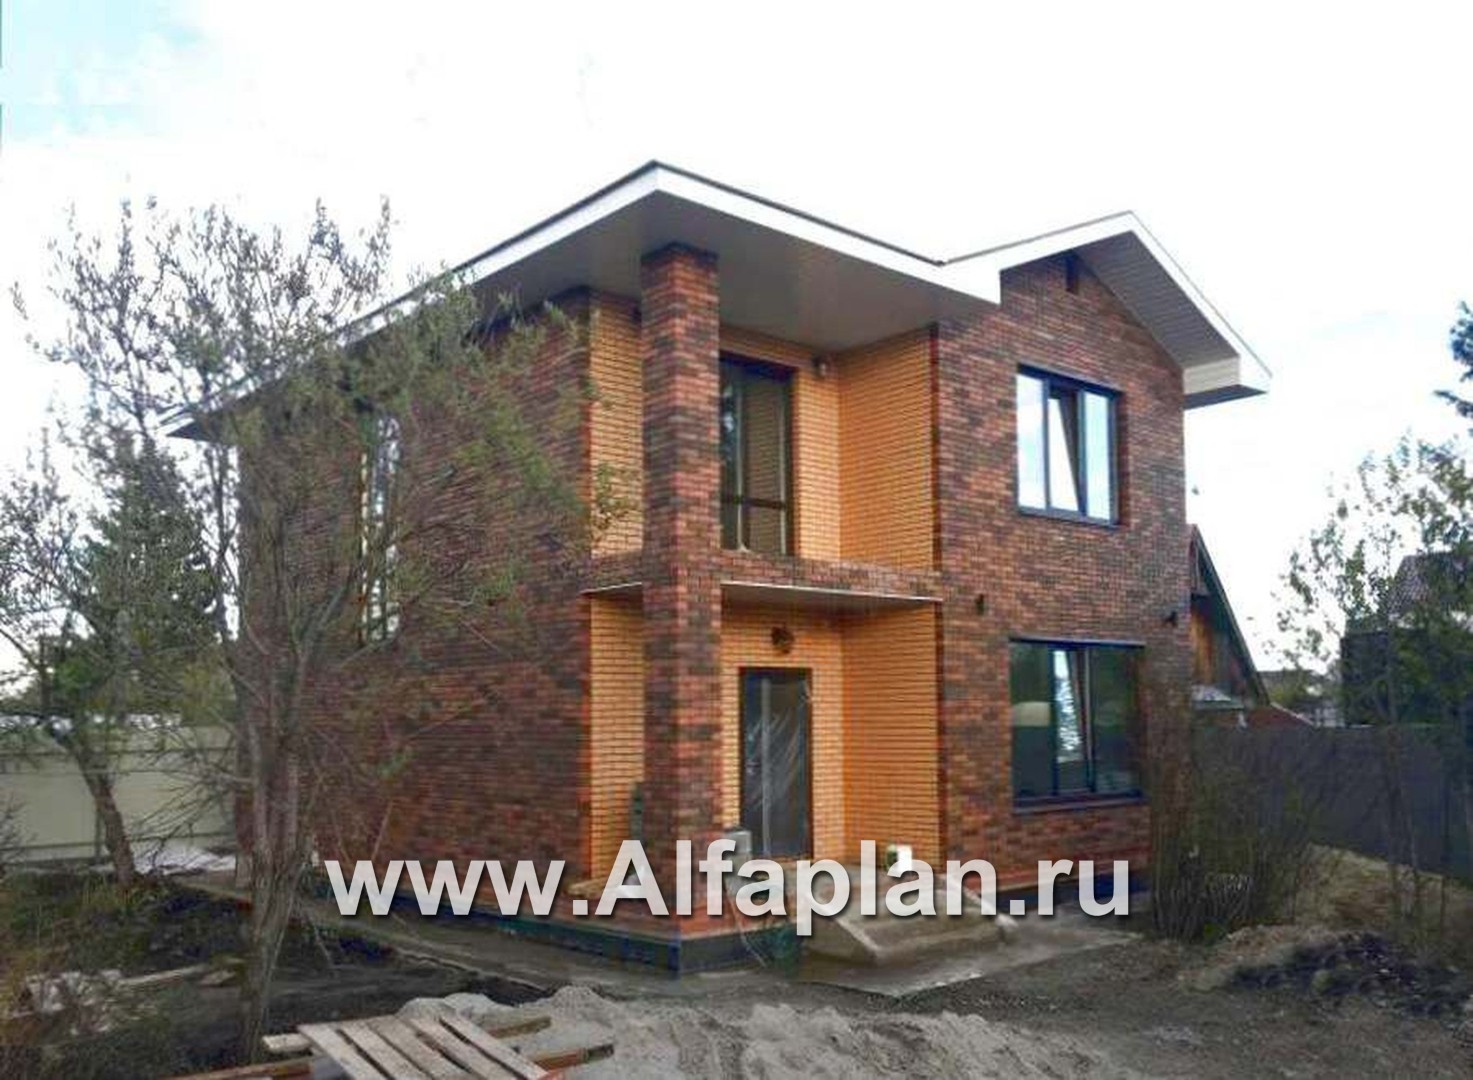 Проекты домов Альфаплан - Кирпичный дом «Серебро» для небольшой семьи - дополнительное изображение №2